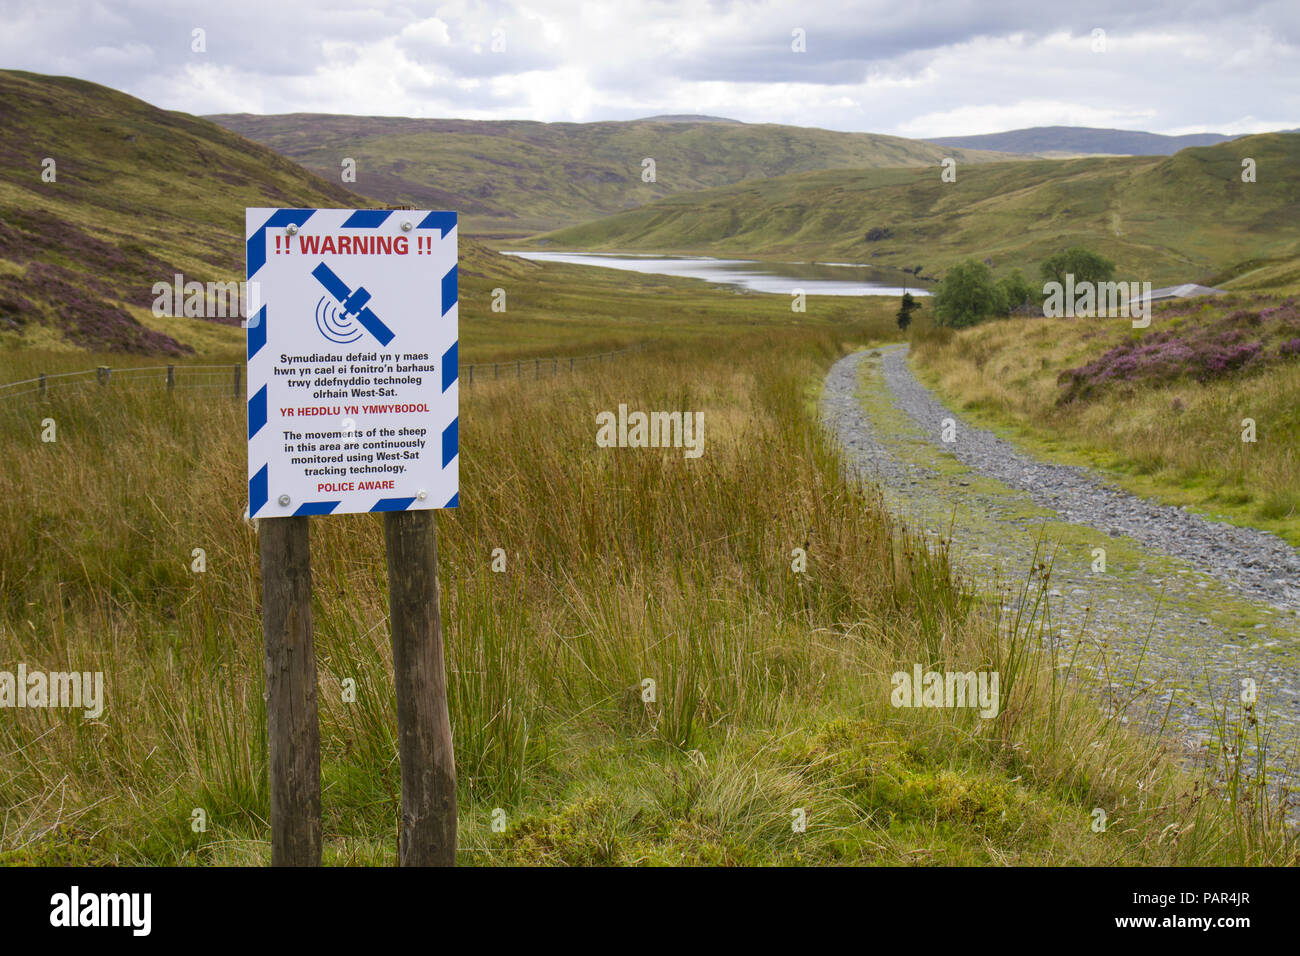 In Englisch und Walisisch Zeichen erscheinen, dass Schafe zu warnen sind satillite verfolgt. In einem abgelegenen Berggebieten Lage. Powys, Wales. Stockfoto